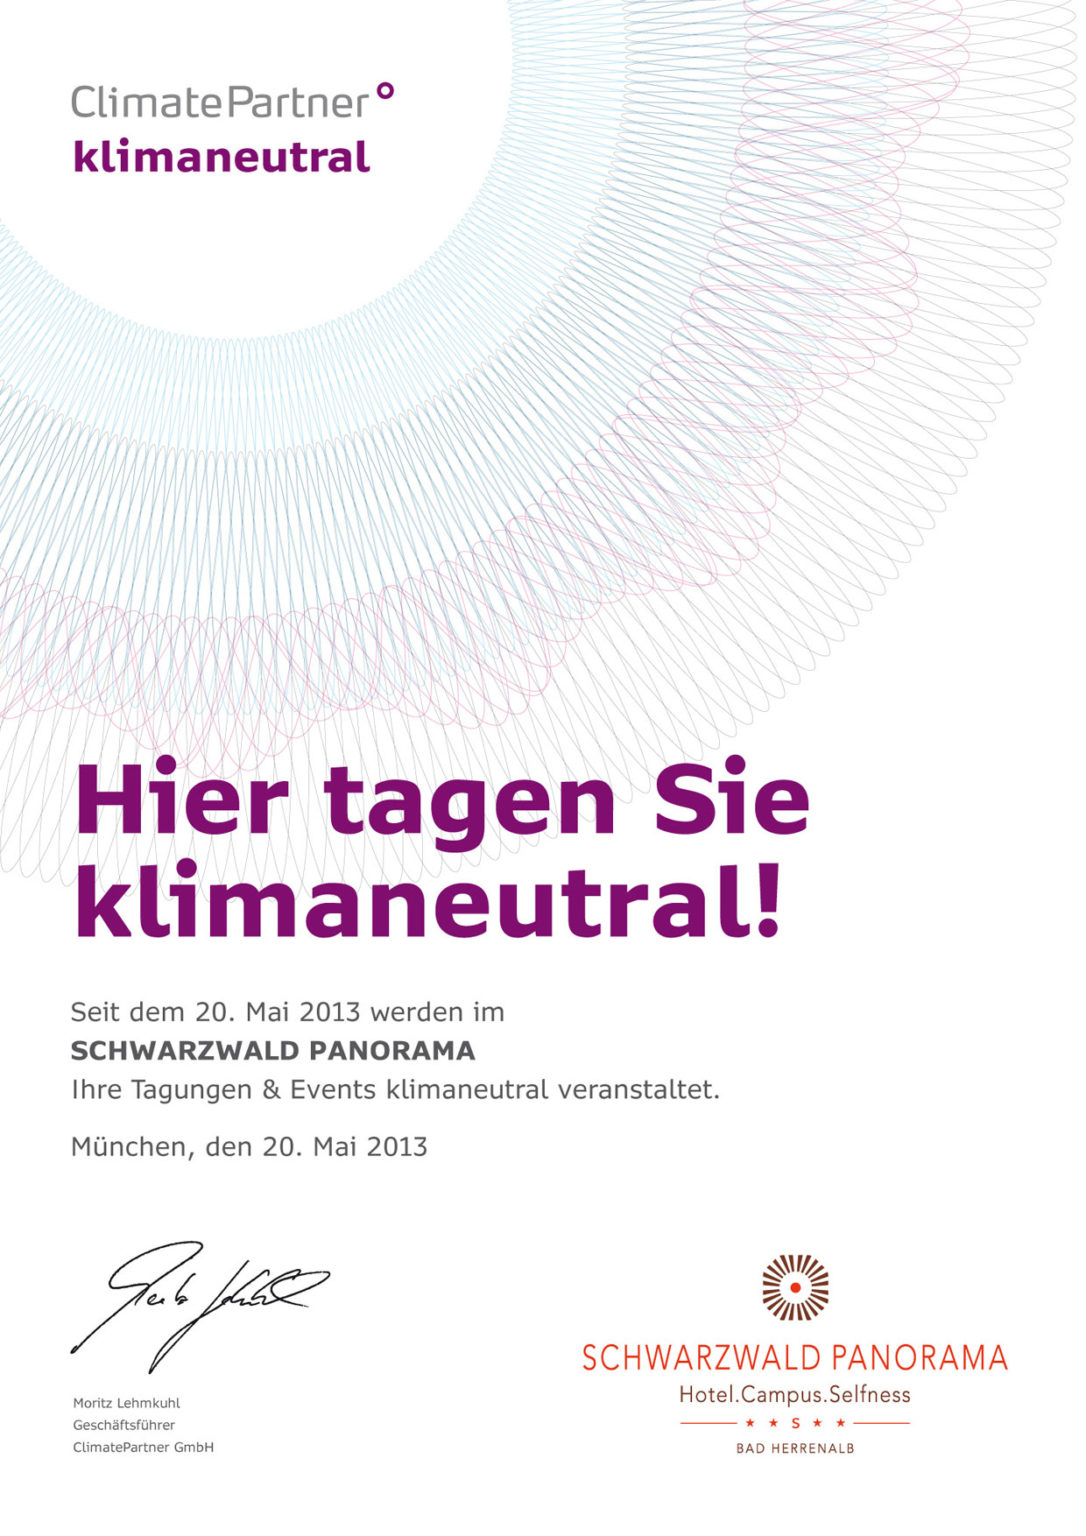 Un certificat pour des conférences climatiquement neutres à l'hôtel Schwarzwald Panorama